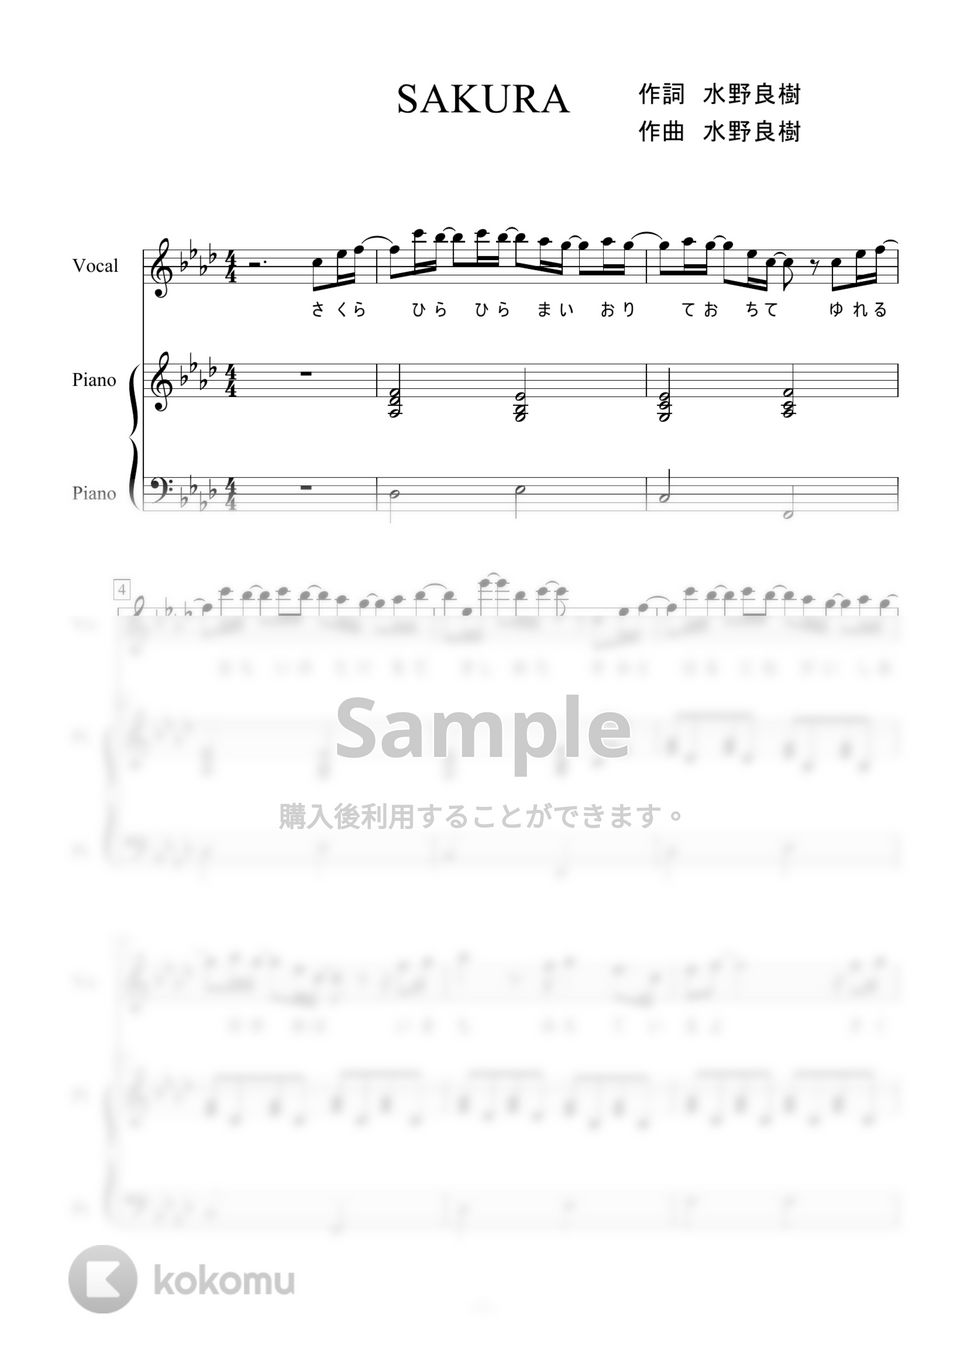 いきものがかり - SAKURA (ピアノ弾き語り) by 二次元楽譜製作所